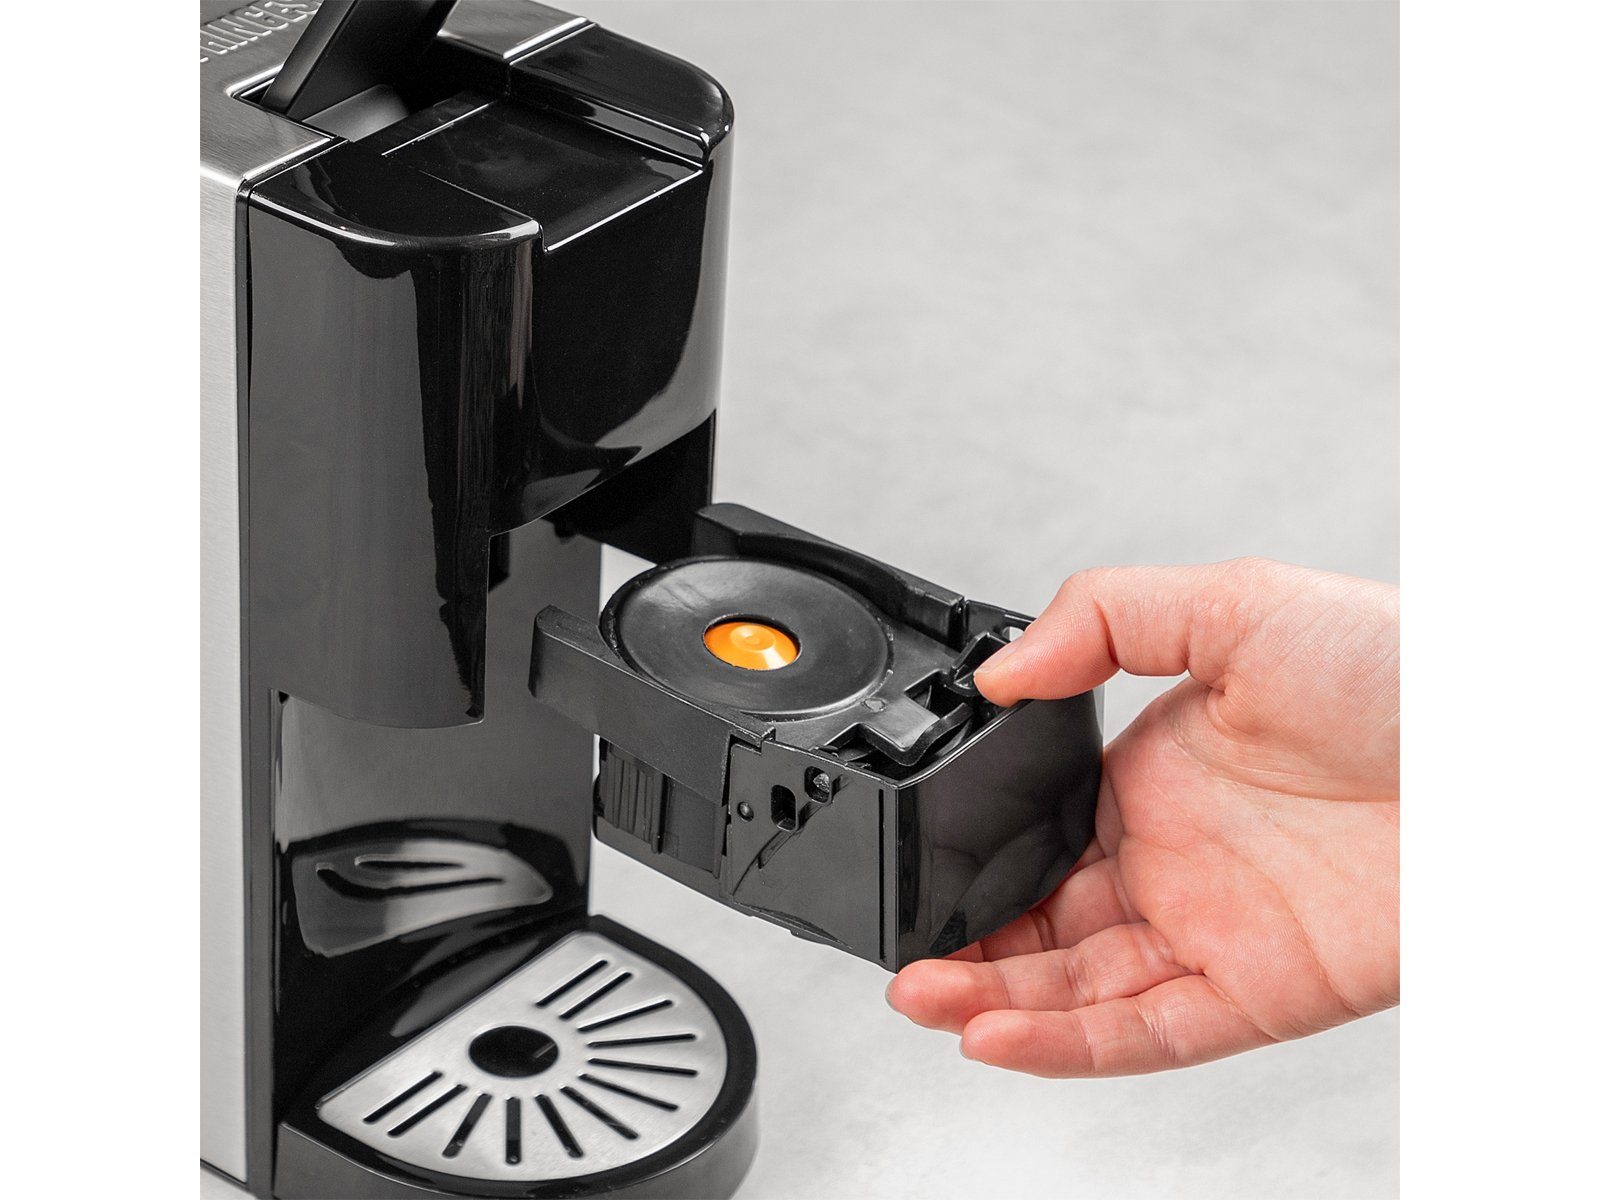 Kaffee-Pulver PRINCESS Kaffeemaschine Kapselmaschine, mit auch Wassertank klein für abnehmbarem